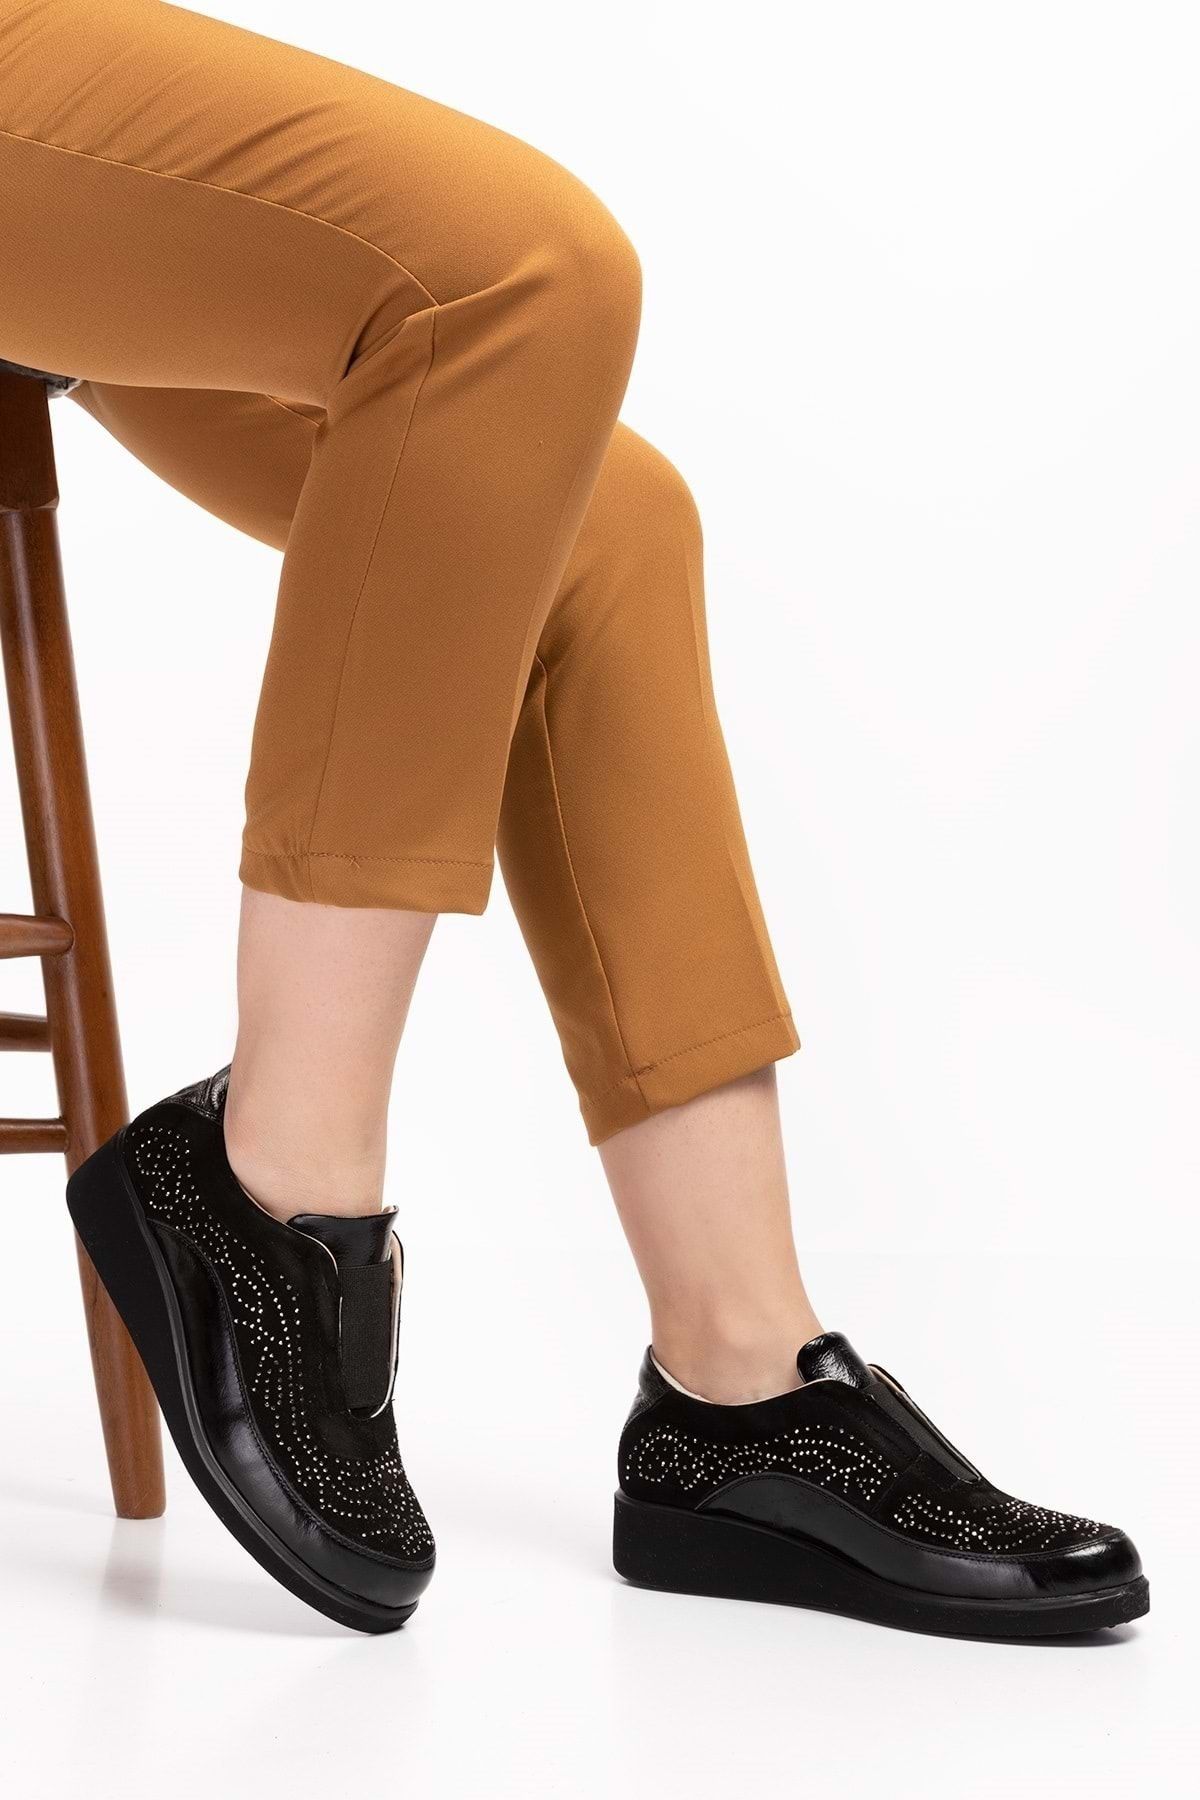 Gondol Hakiki Deri Ortopedik Taban Taş Detay Şık Ayakkabı Ert.3804 - Siyah - 40